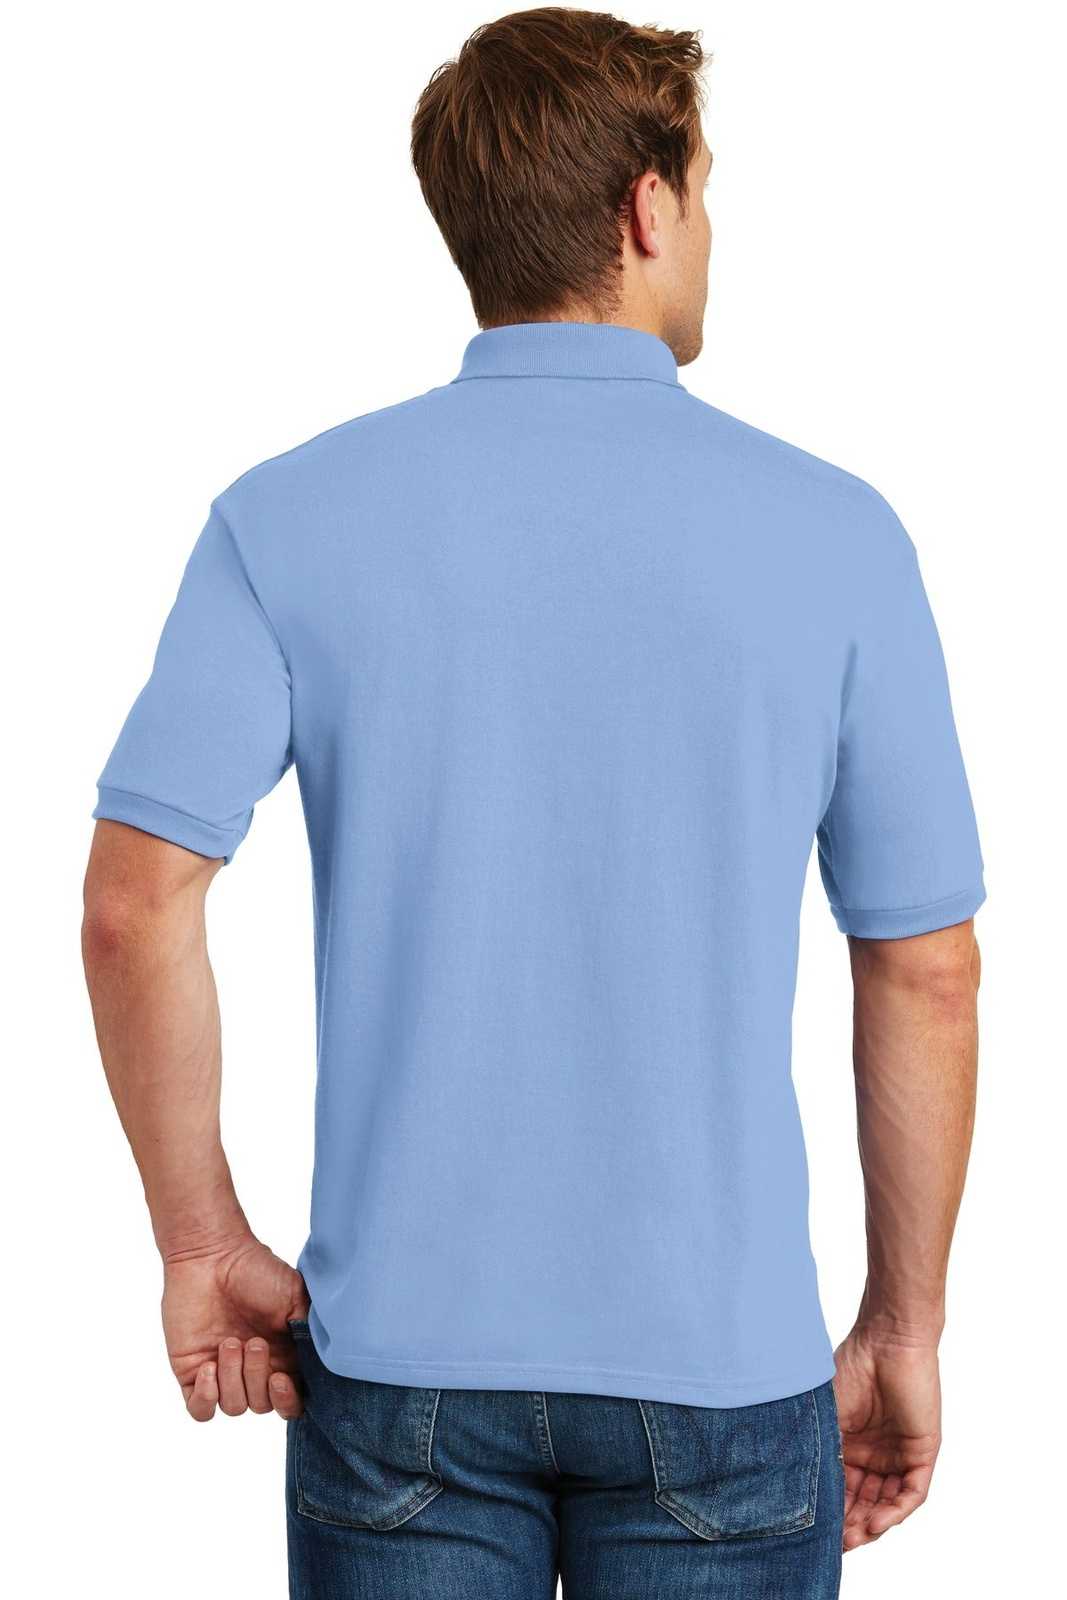 Hanes 054X Ecosmart 5.2-Ounce Jersey Knit Sport Shirt - Light Blue - HIT a Double